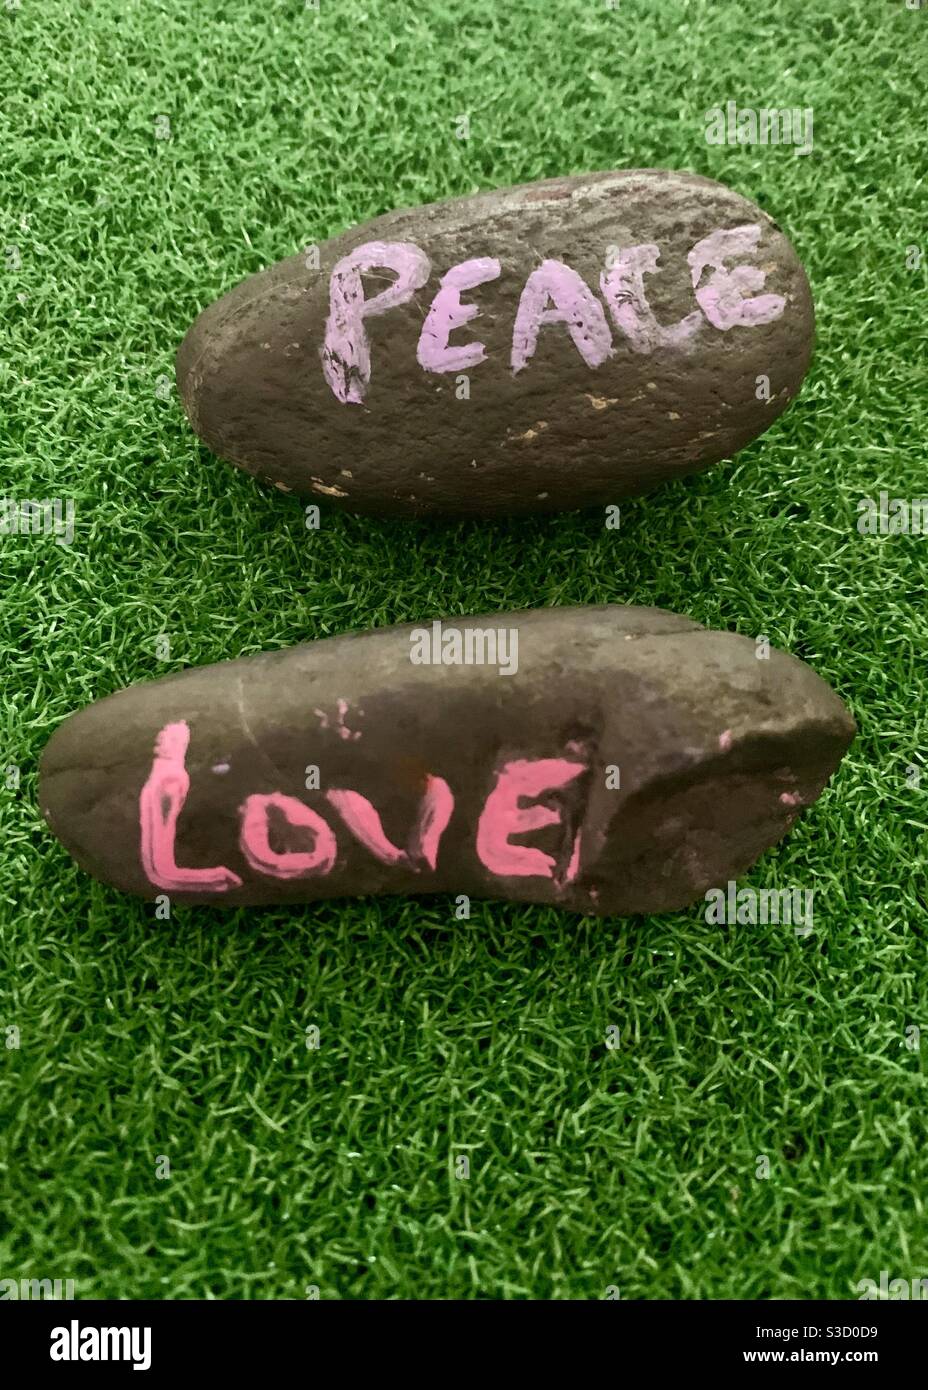 Painted Peace Rocks - rocce con le parole pace e amore dipinte su di loro esposti su erba verde. Pace nel mondo e pari diritti - amatevi gli uni gli altri Foto Stock